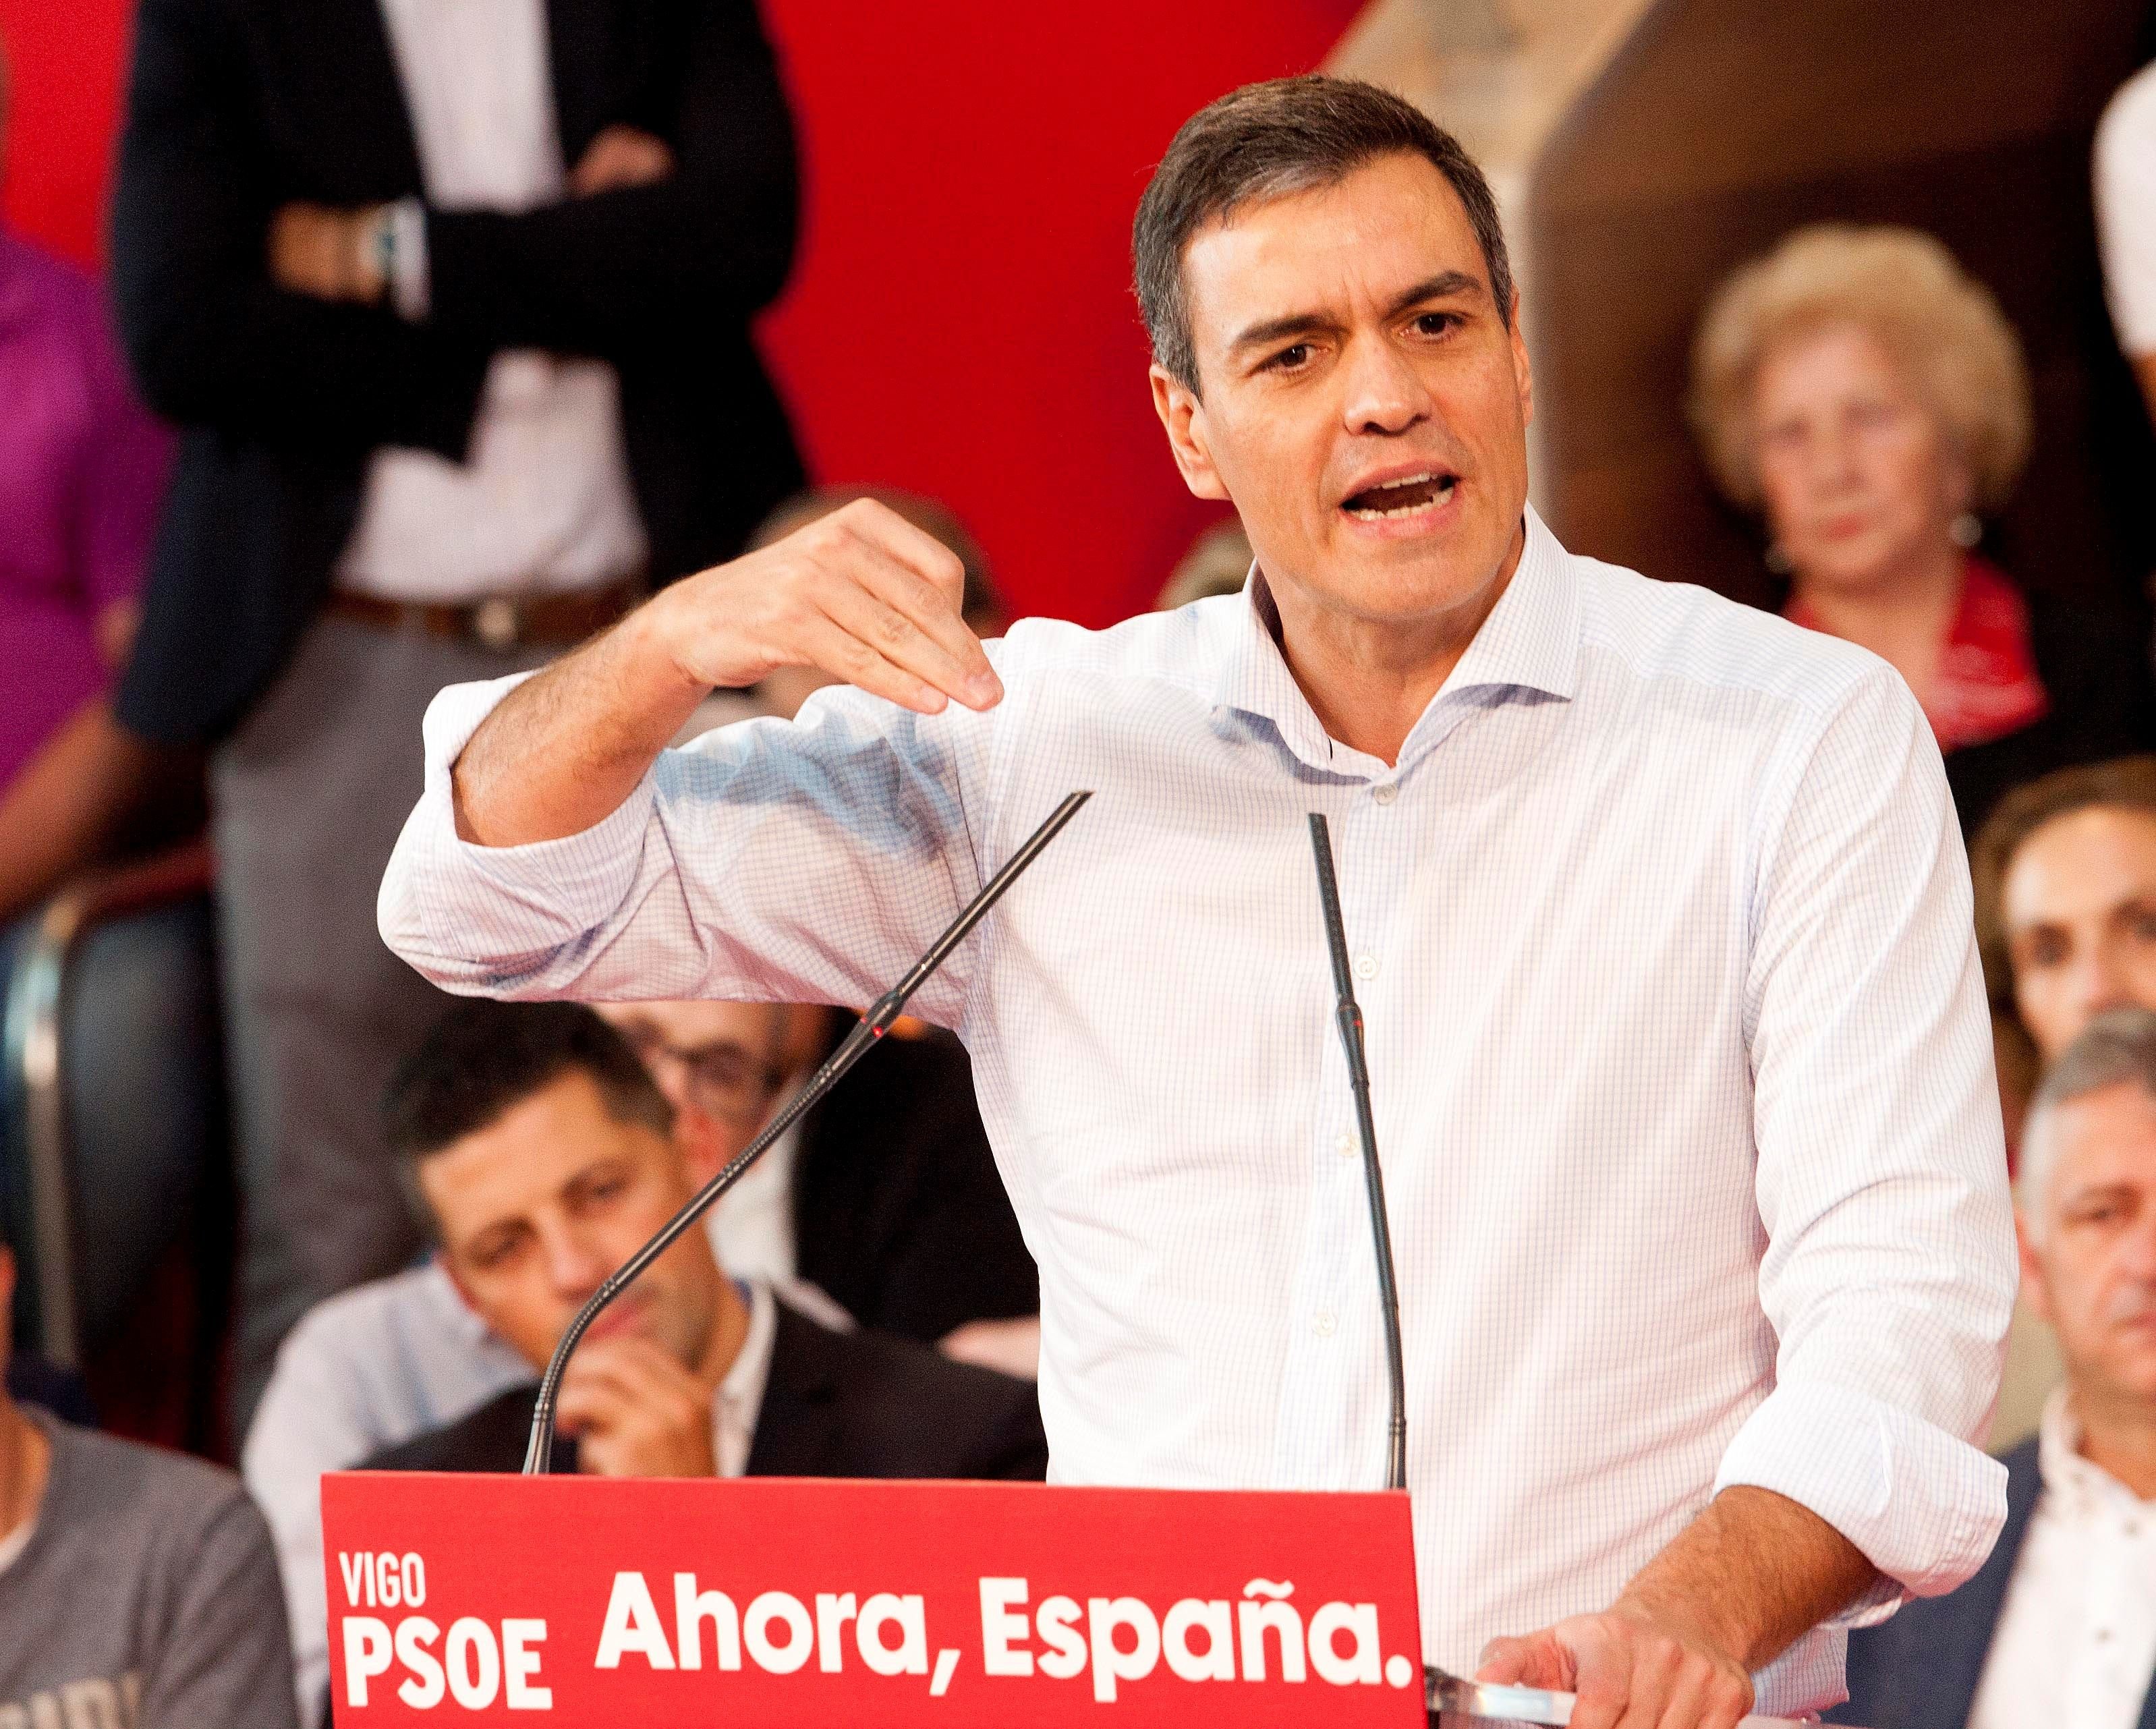 La campaña más nacionalista del PSOE, PP, Cs y Vox: "España"